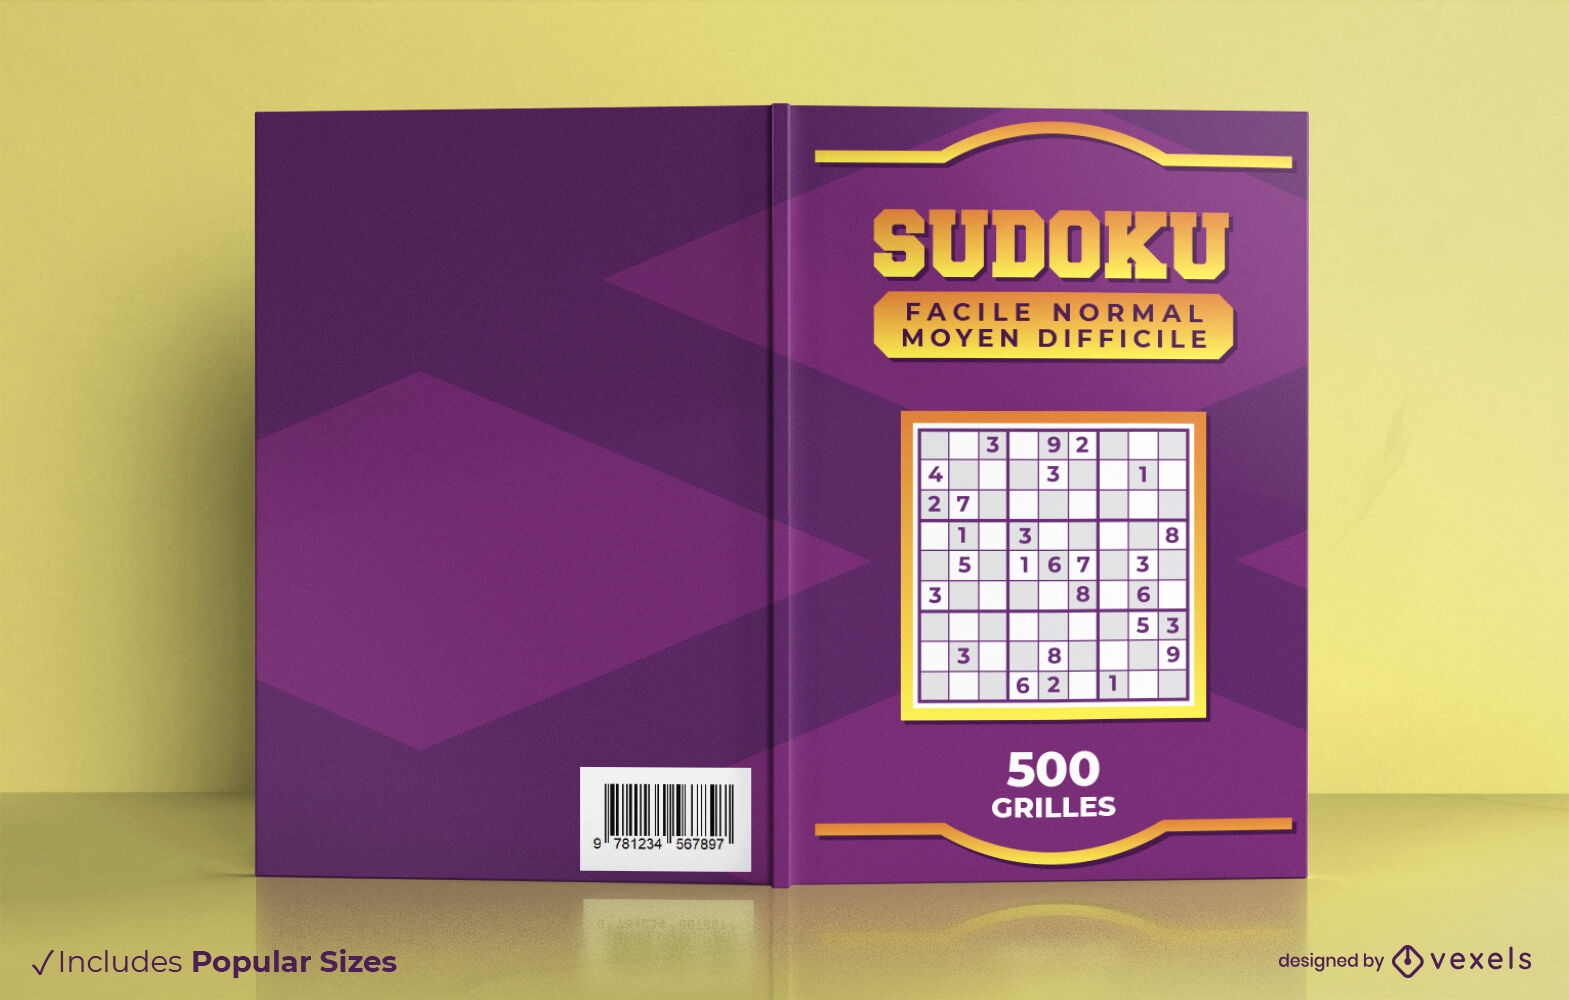 Sudoku games book cover design